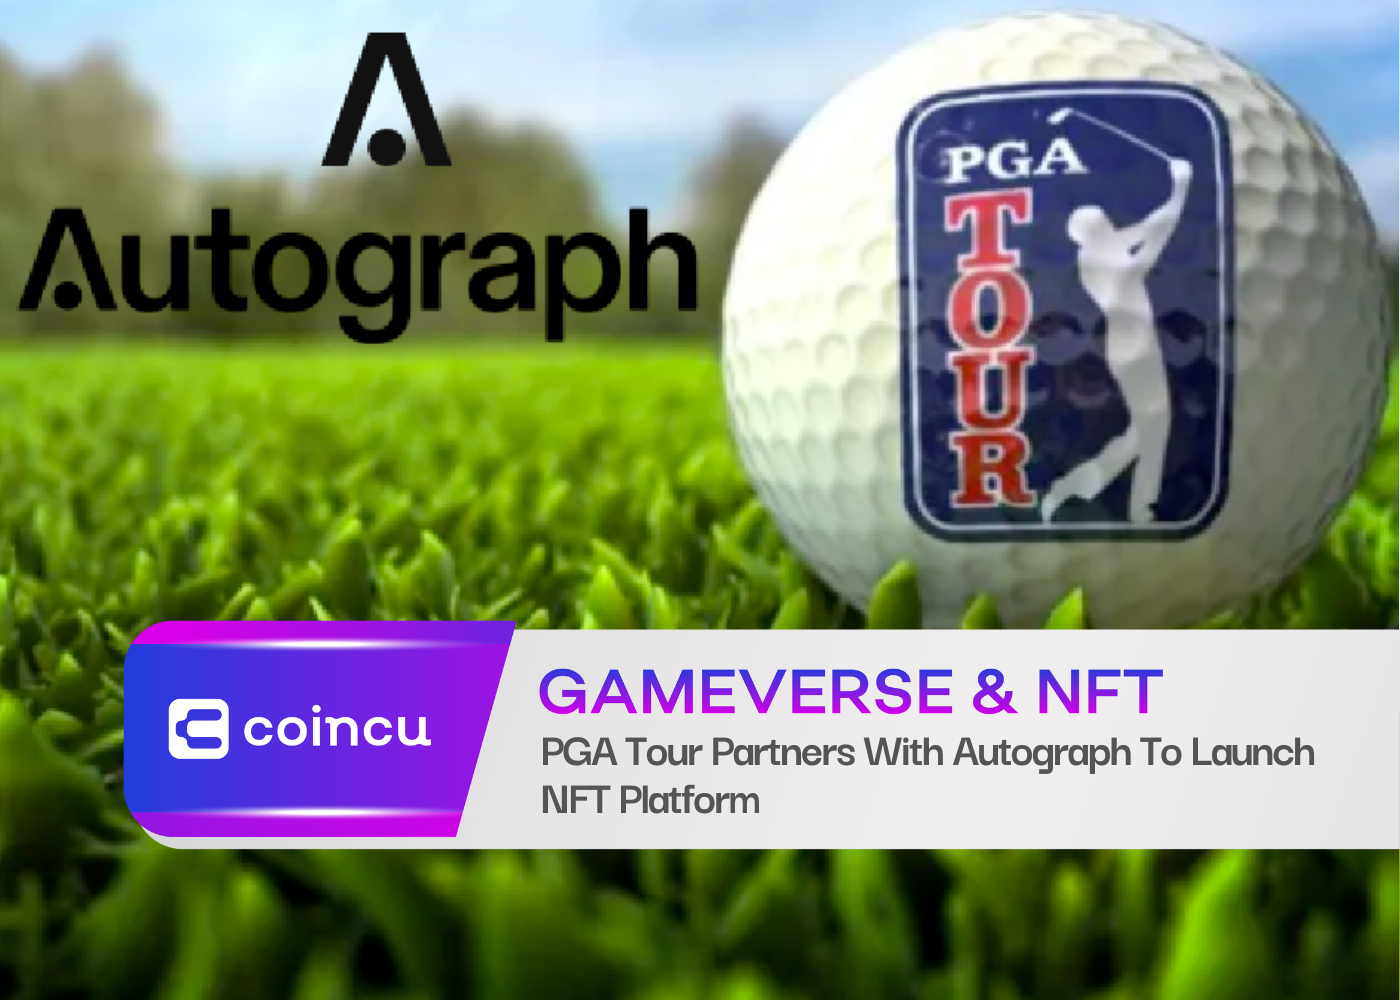 PGA Tour Partners With Autograph To Launch NFT Platform